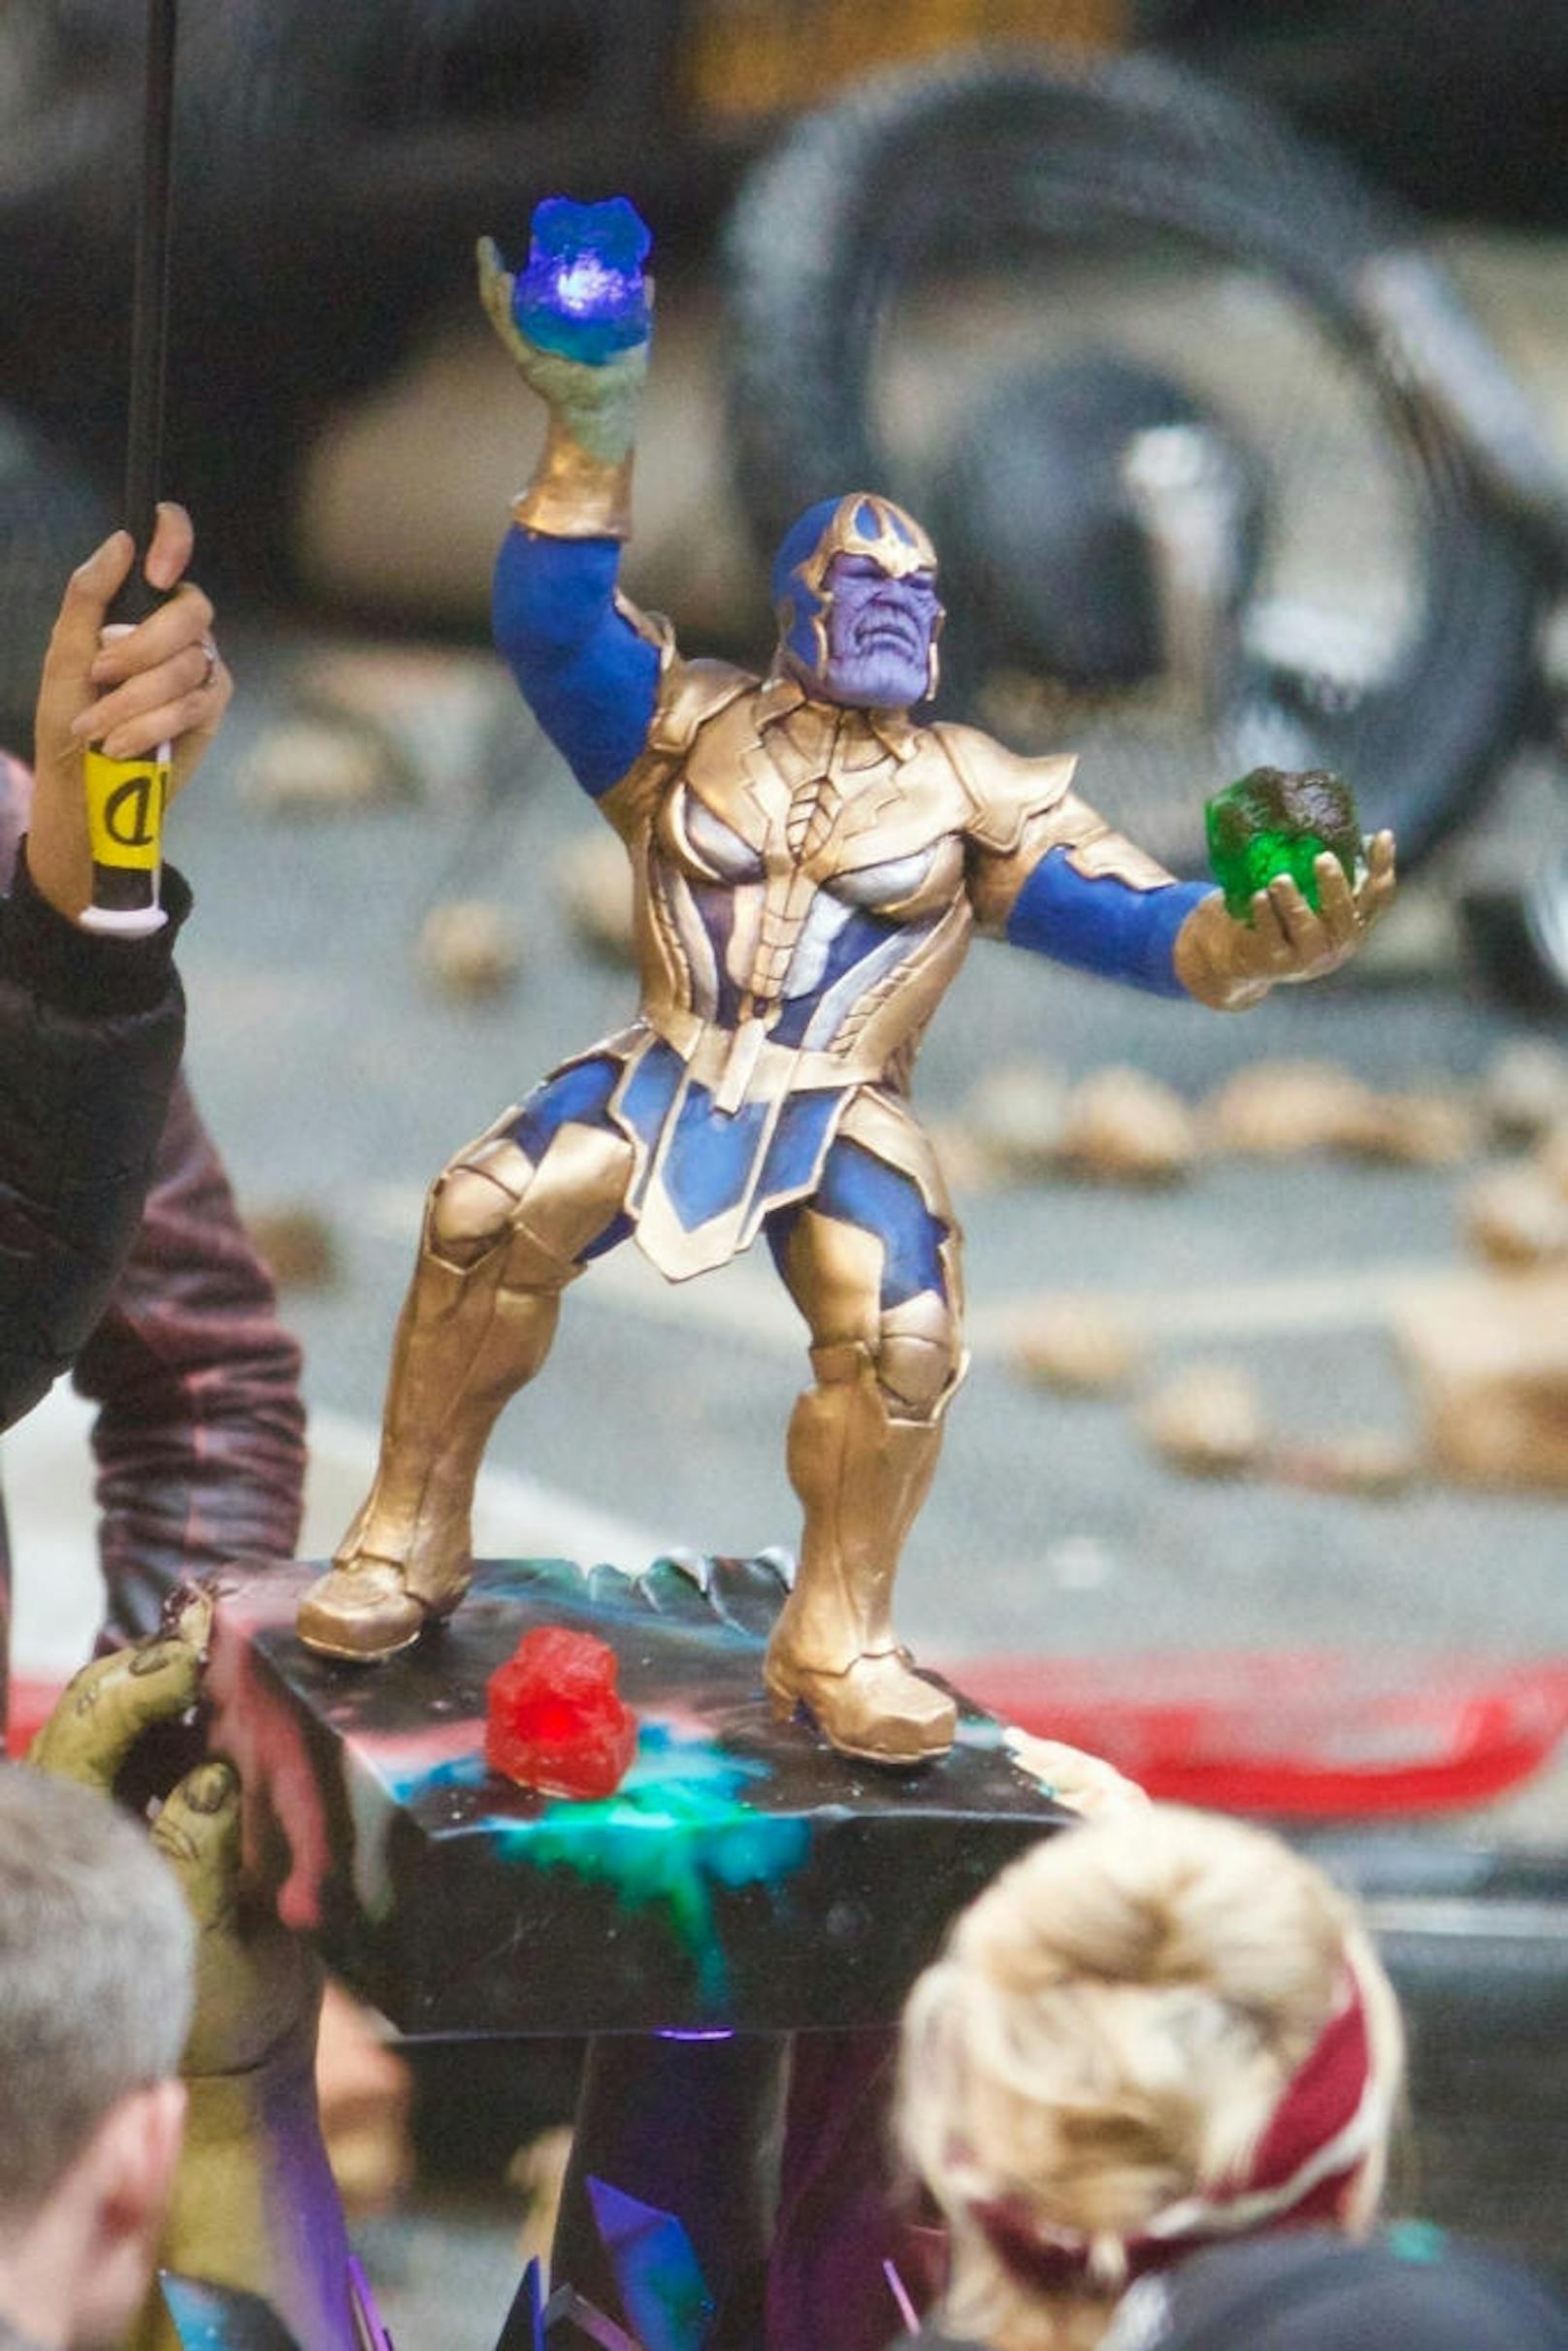 Kein Wunder bei einer so kunstvoll angefertigten Torte, auf der Bösewicht Thanos mit zwei "Infinity Stones" hantierte.